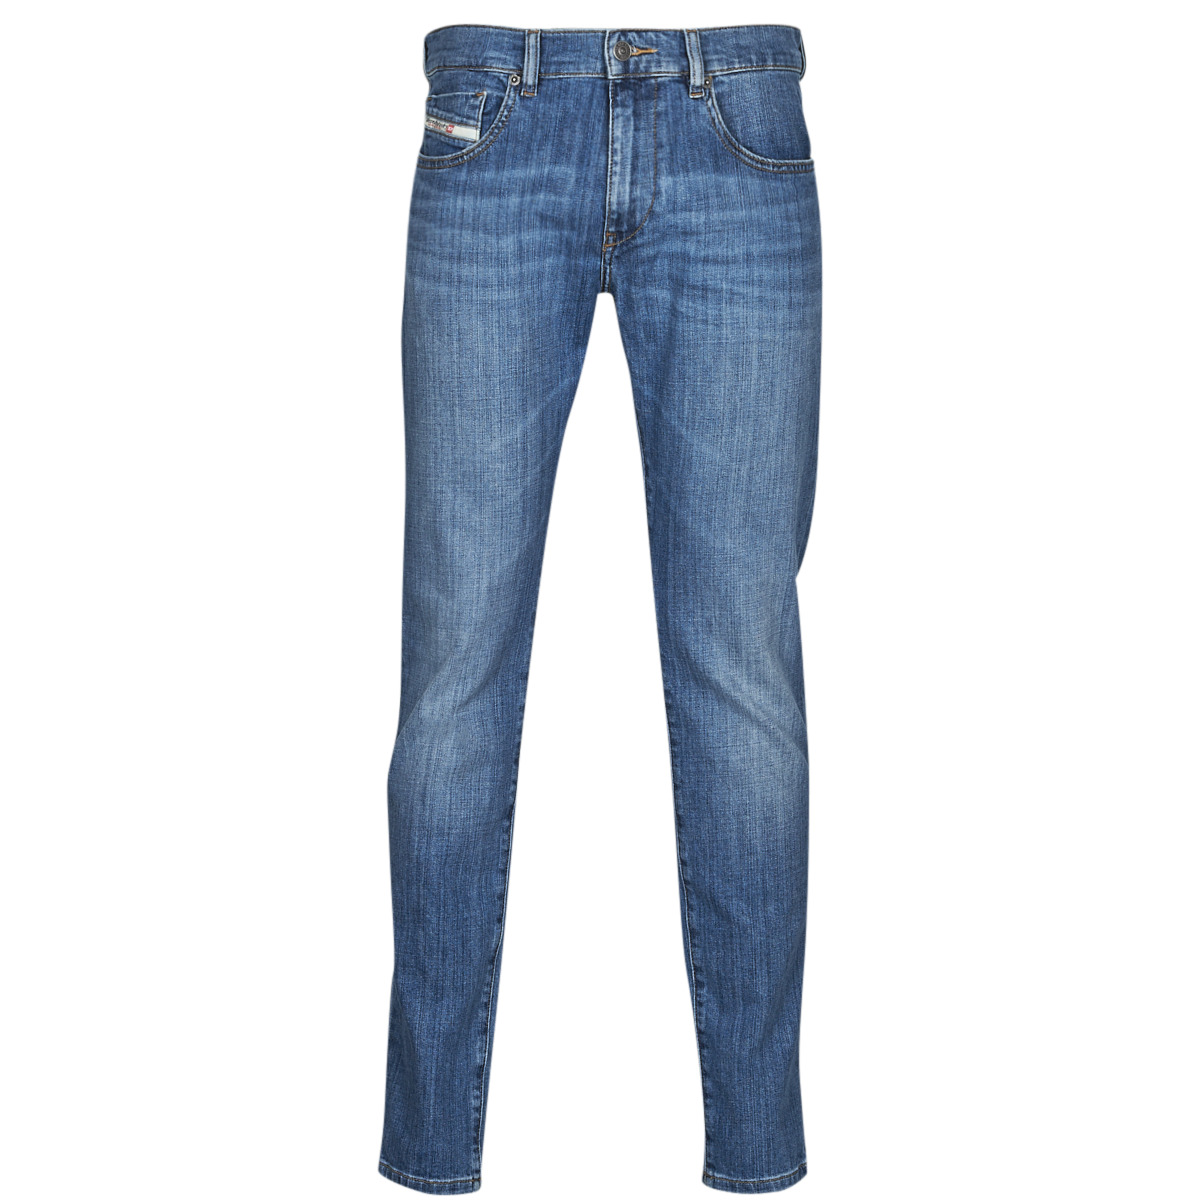 Vêtements Homme Jeans slim Diesel 2019 D-STRUKT Bleu clair